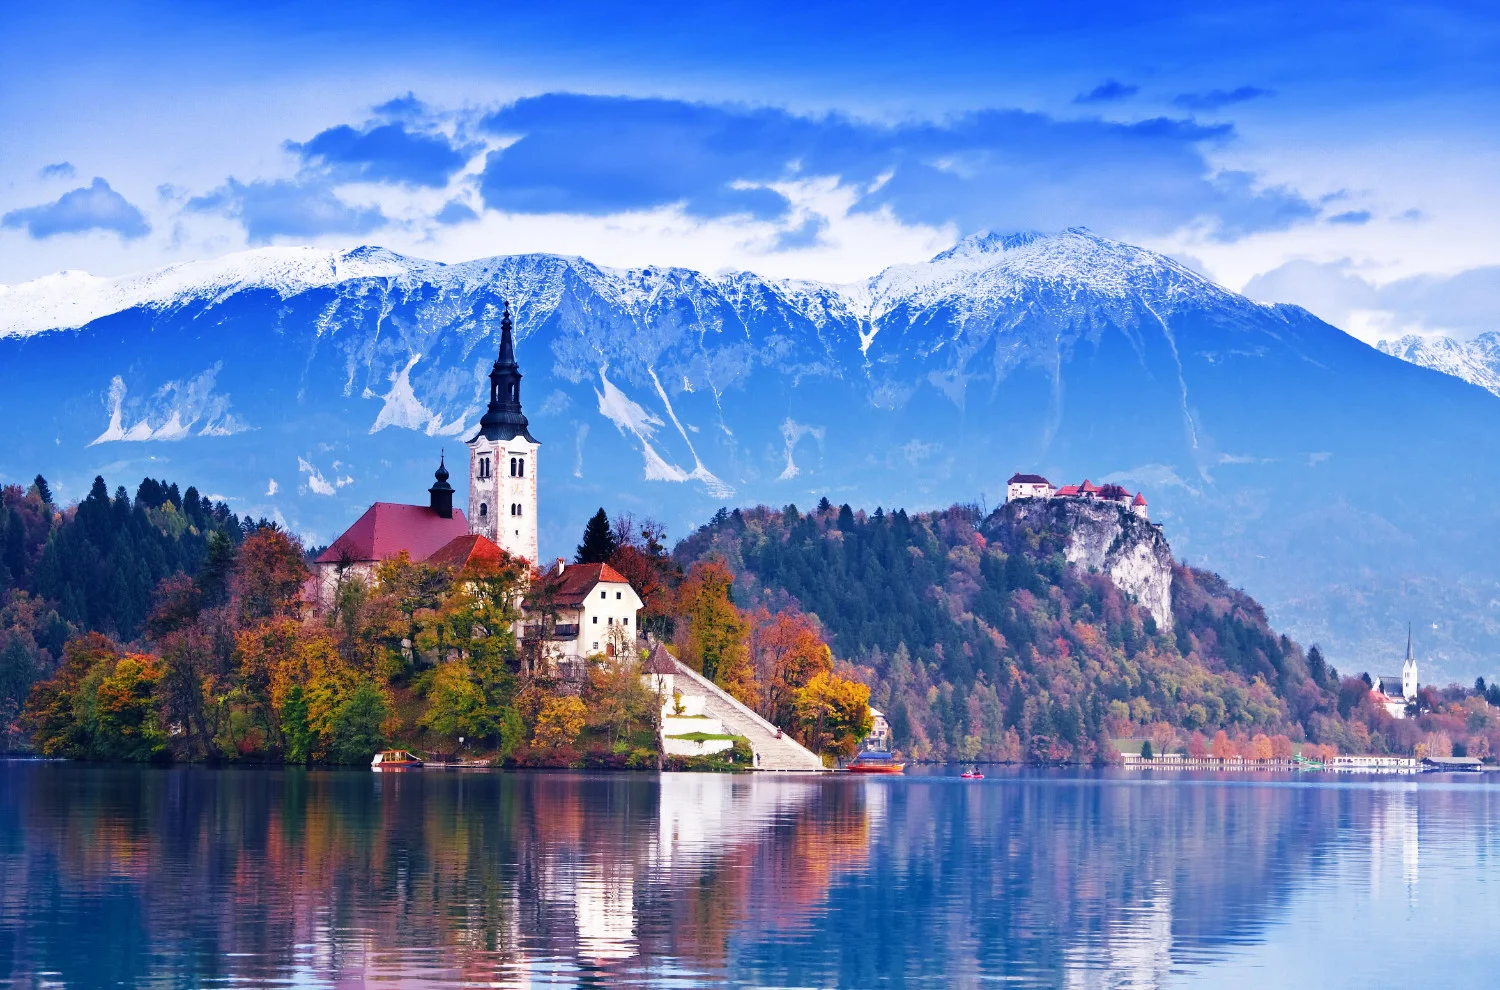 La mai puțin de 20 de kilometri de autostrada A1, puteți ajunge la atracții captivante, cum ar fi Peștera Postojna, Castelul Predjama și minunea naturală Lacul Bled.